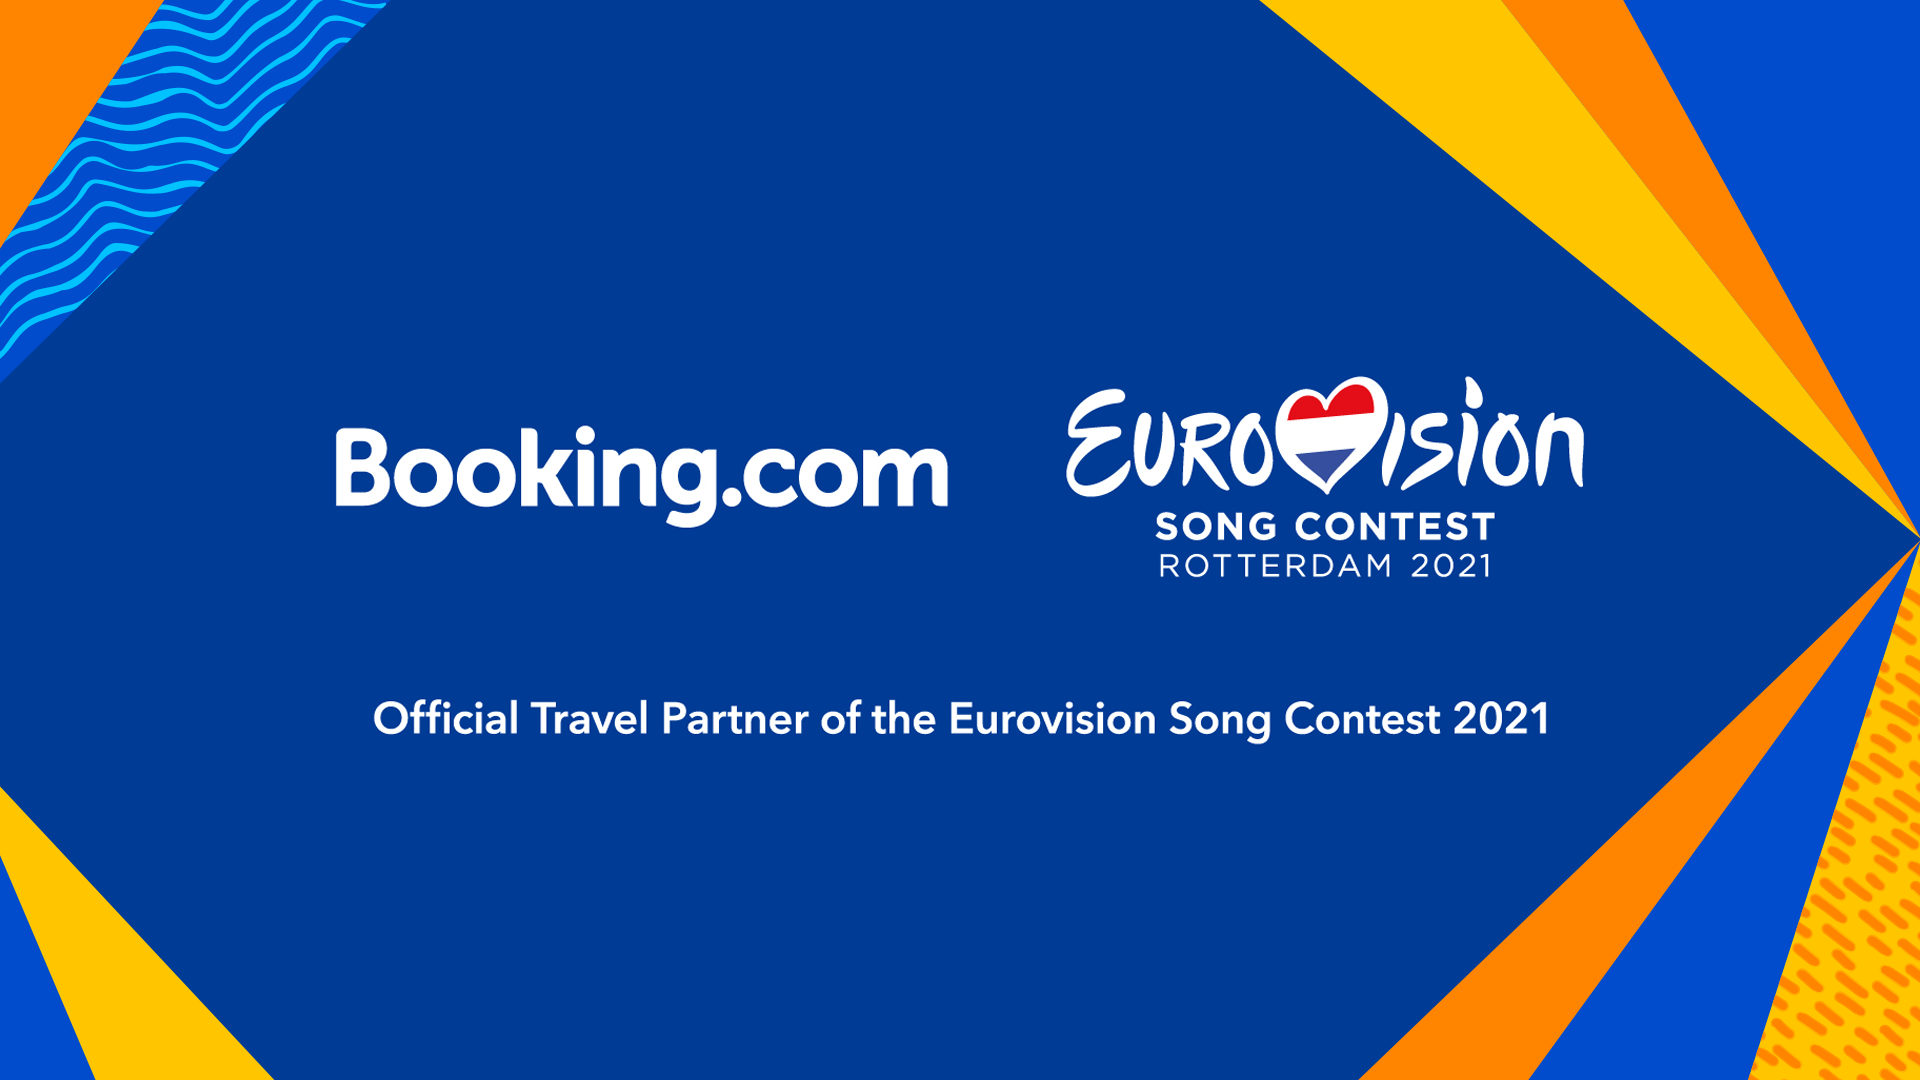 Eurovision Song Contest 2021globalnews.booking.com